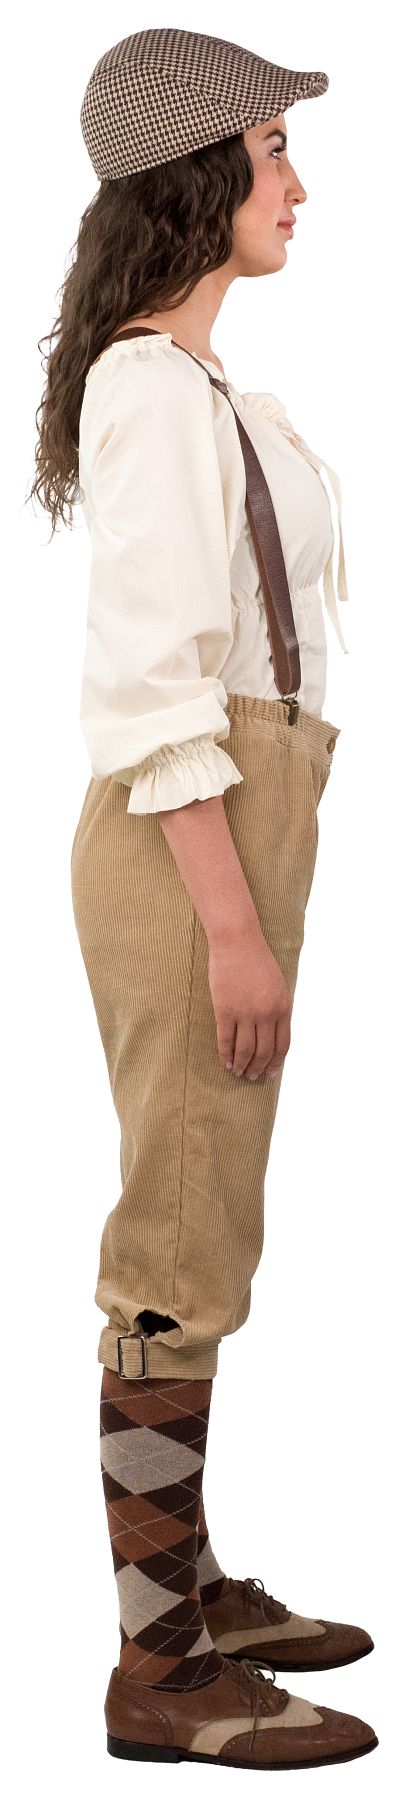 Knickerbocker pants for women